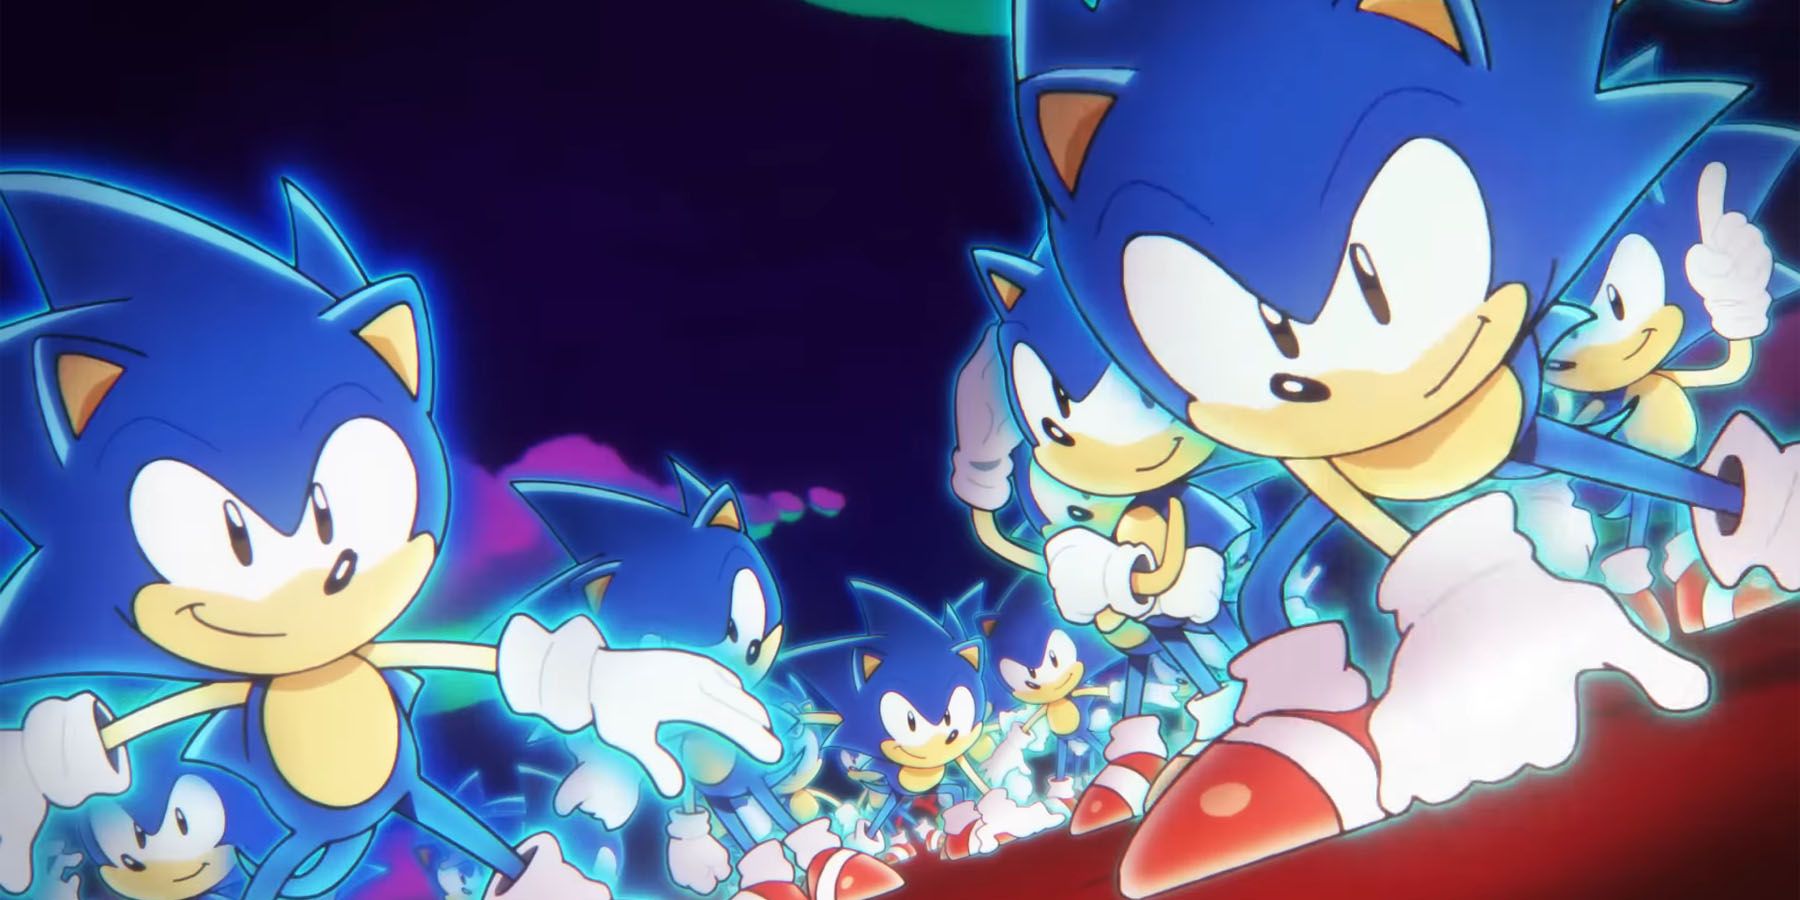 Cover Reveal – Sonic Superstars - Game Informer